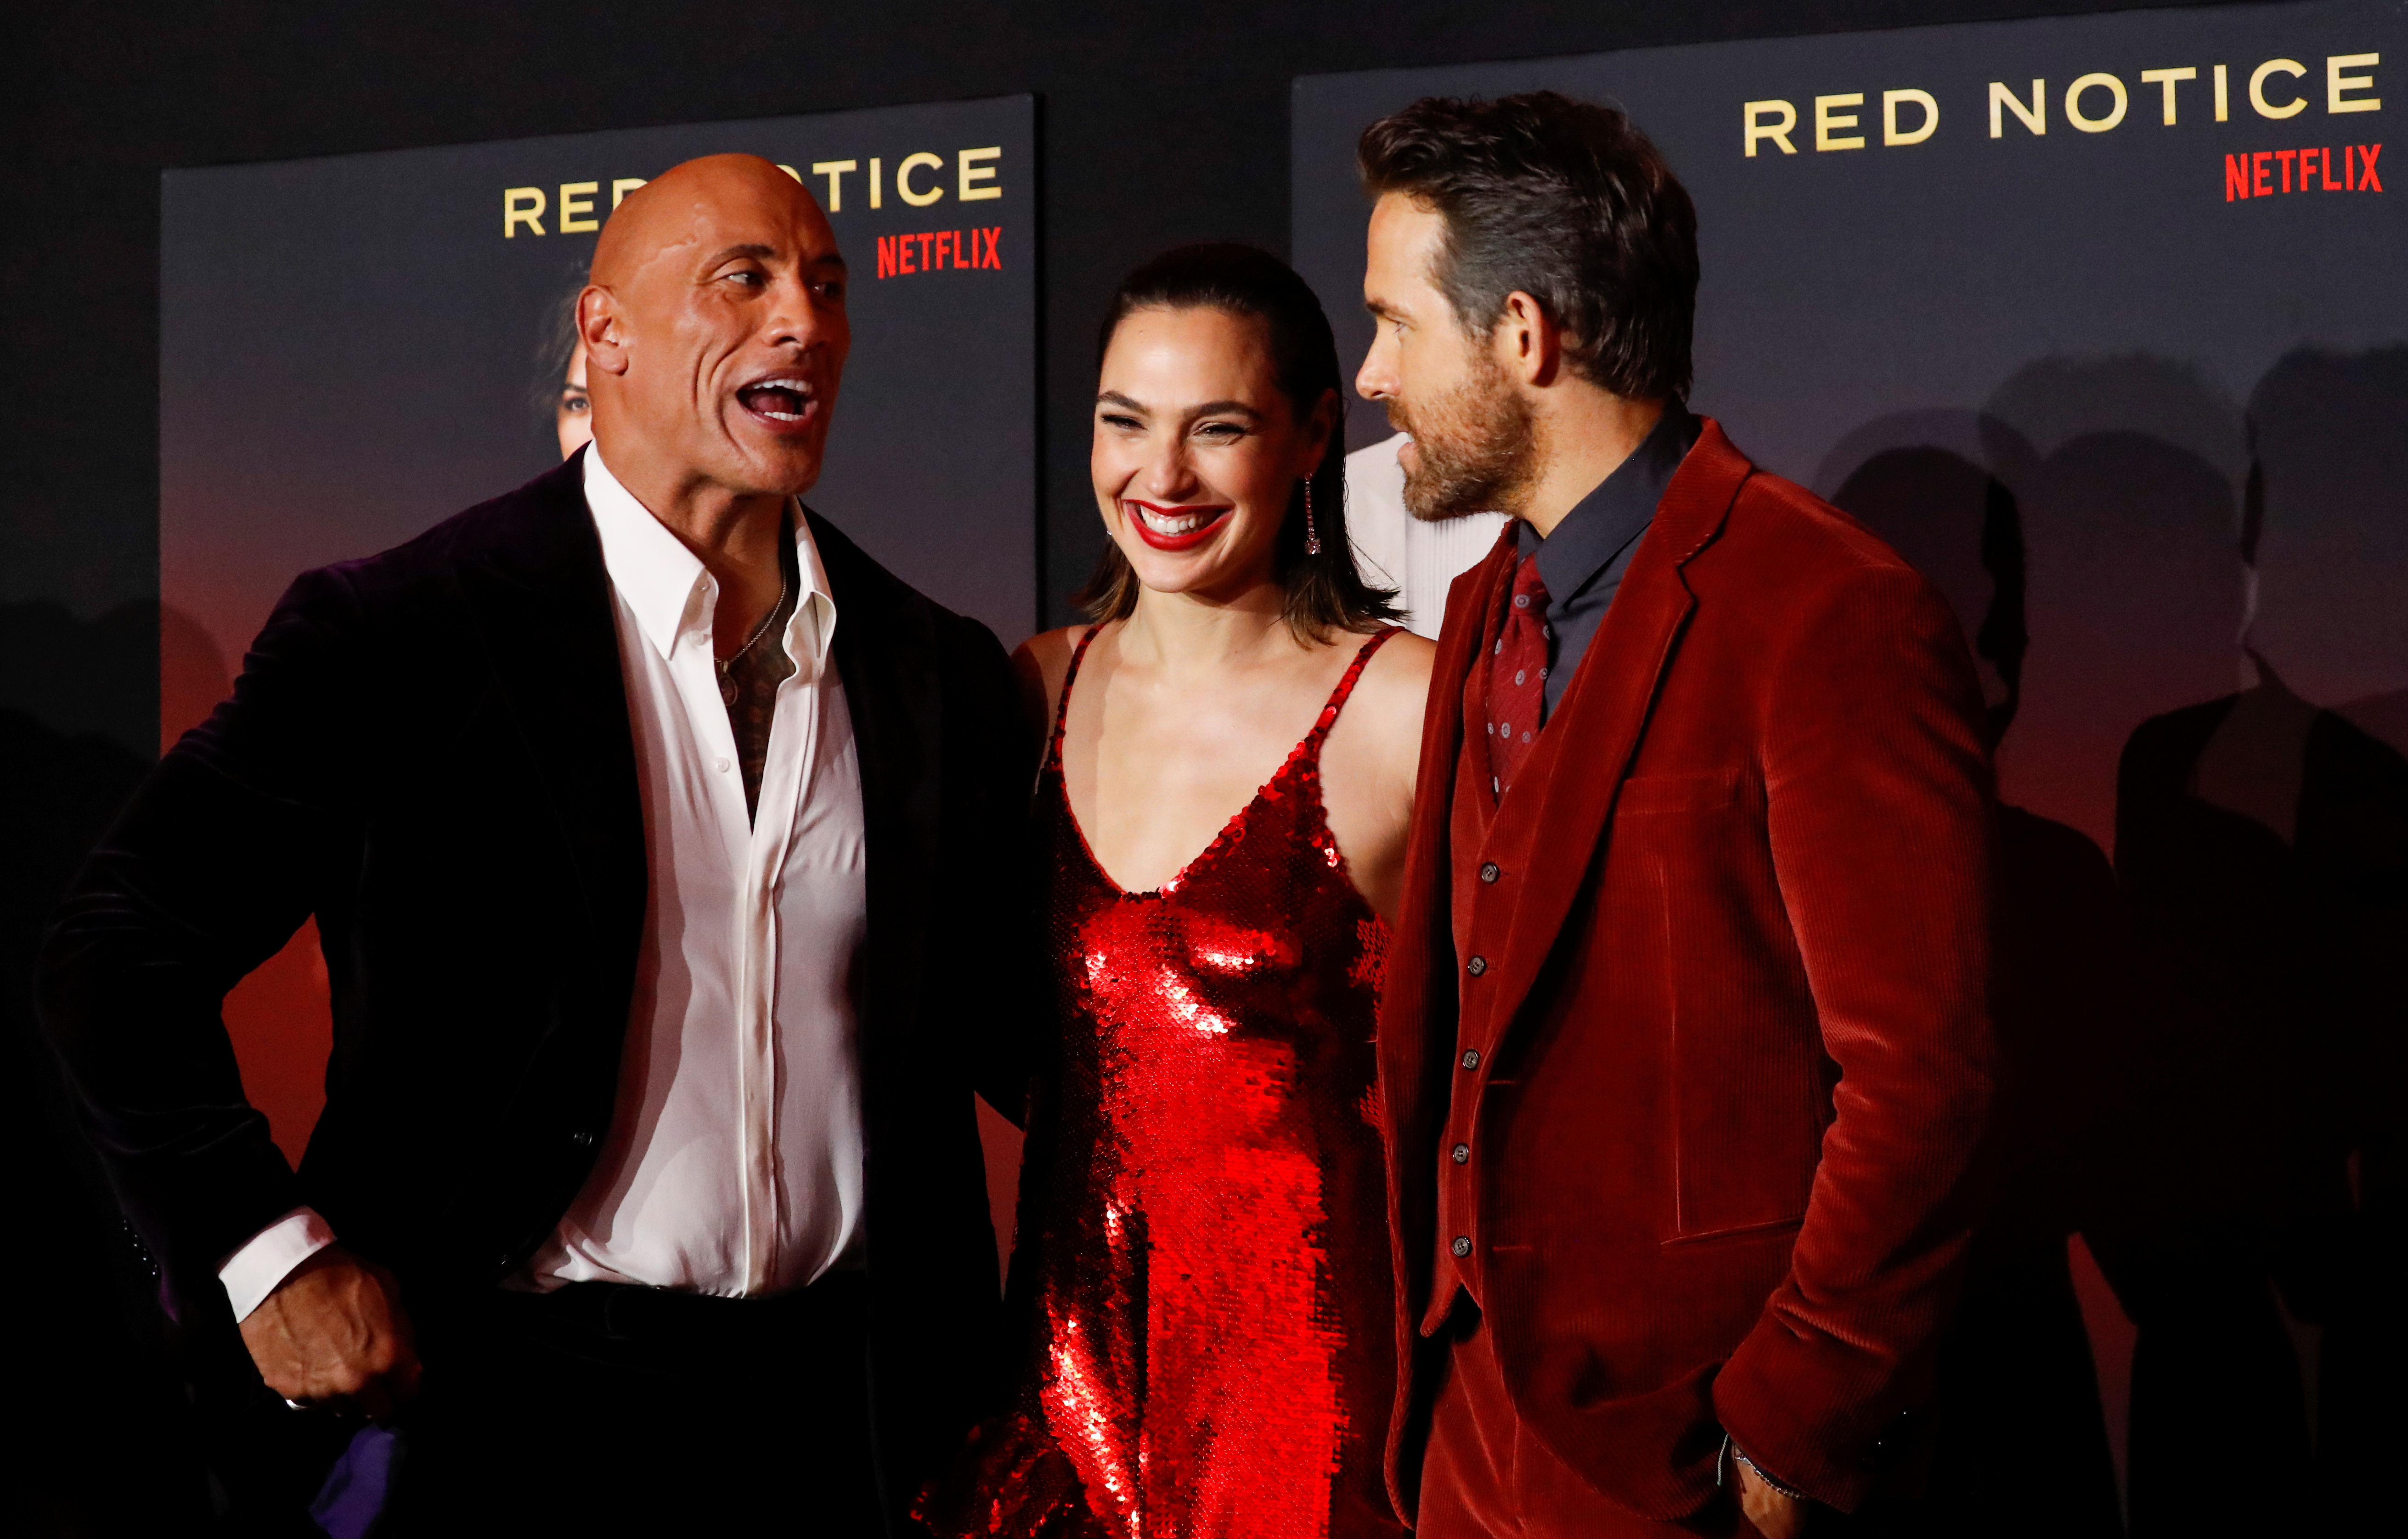 Los miembros del reparto Dwayne Johnson, Gal Gadot y Ryan Reynolds asisten al estreno de la película "Red Notice" en Los Ángeles, California, Estados Unidos, el 3 de noviembre de 2021. REUTERS / Mario Anzuoni
